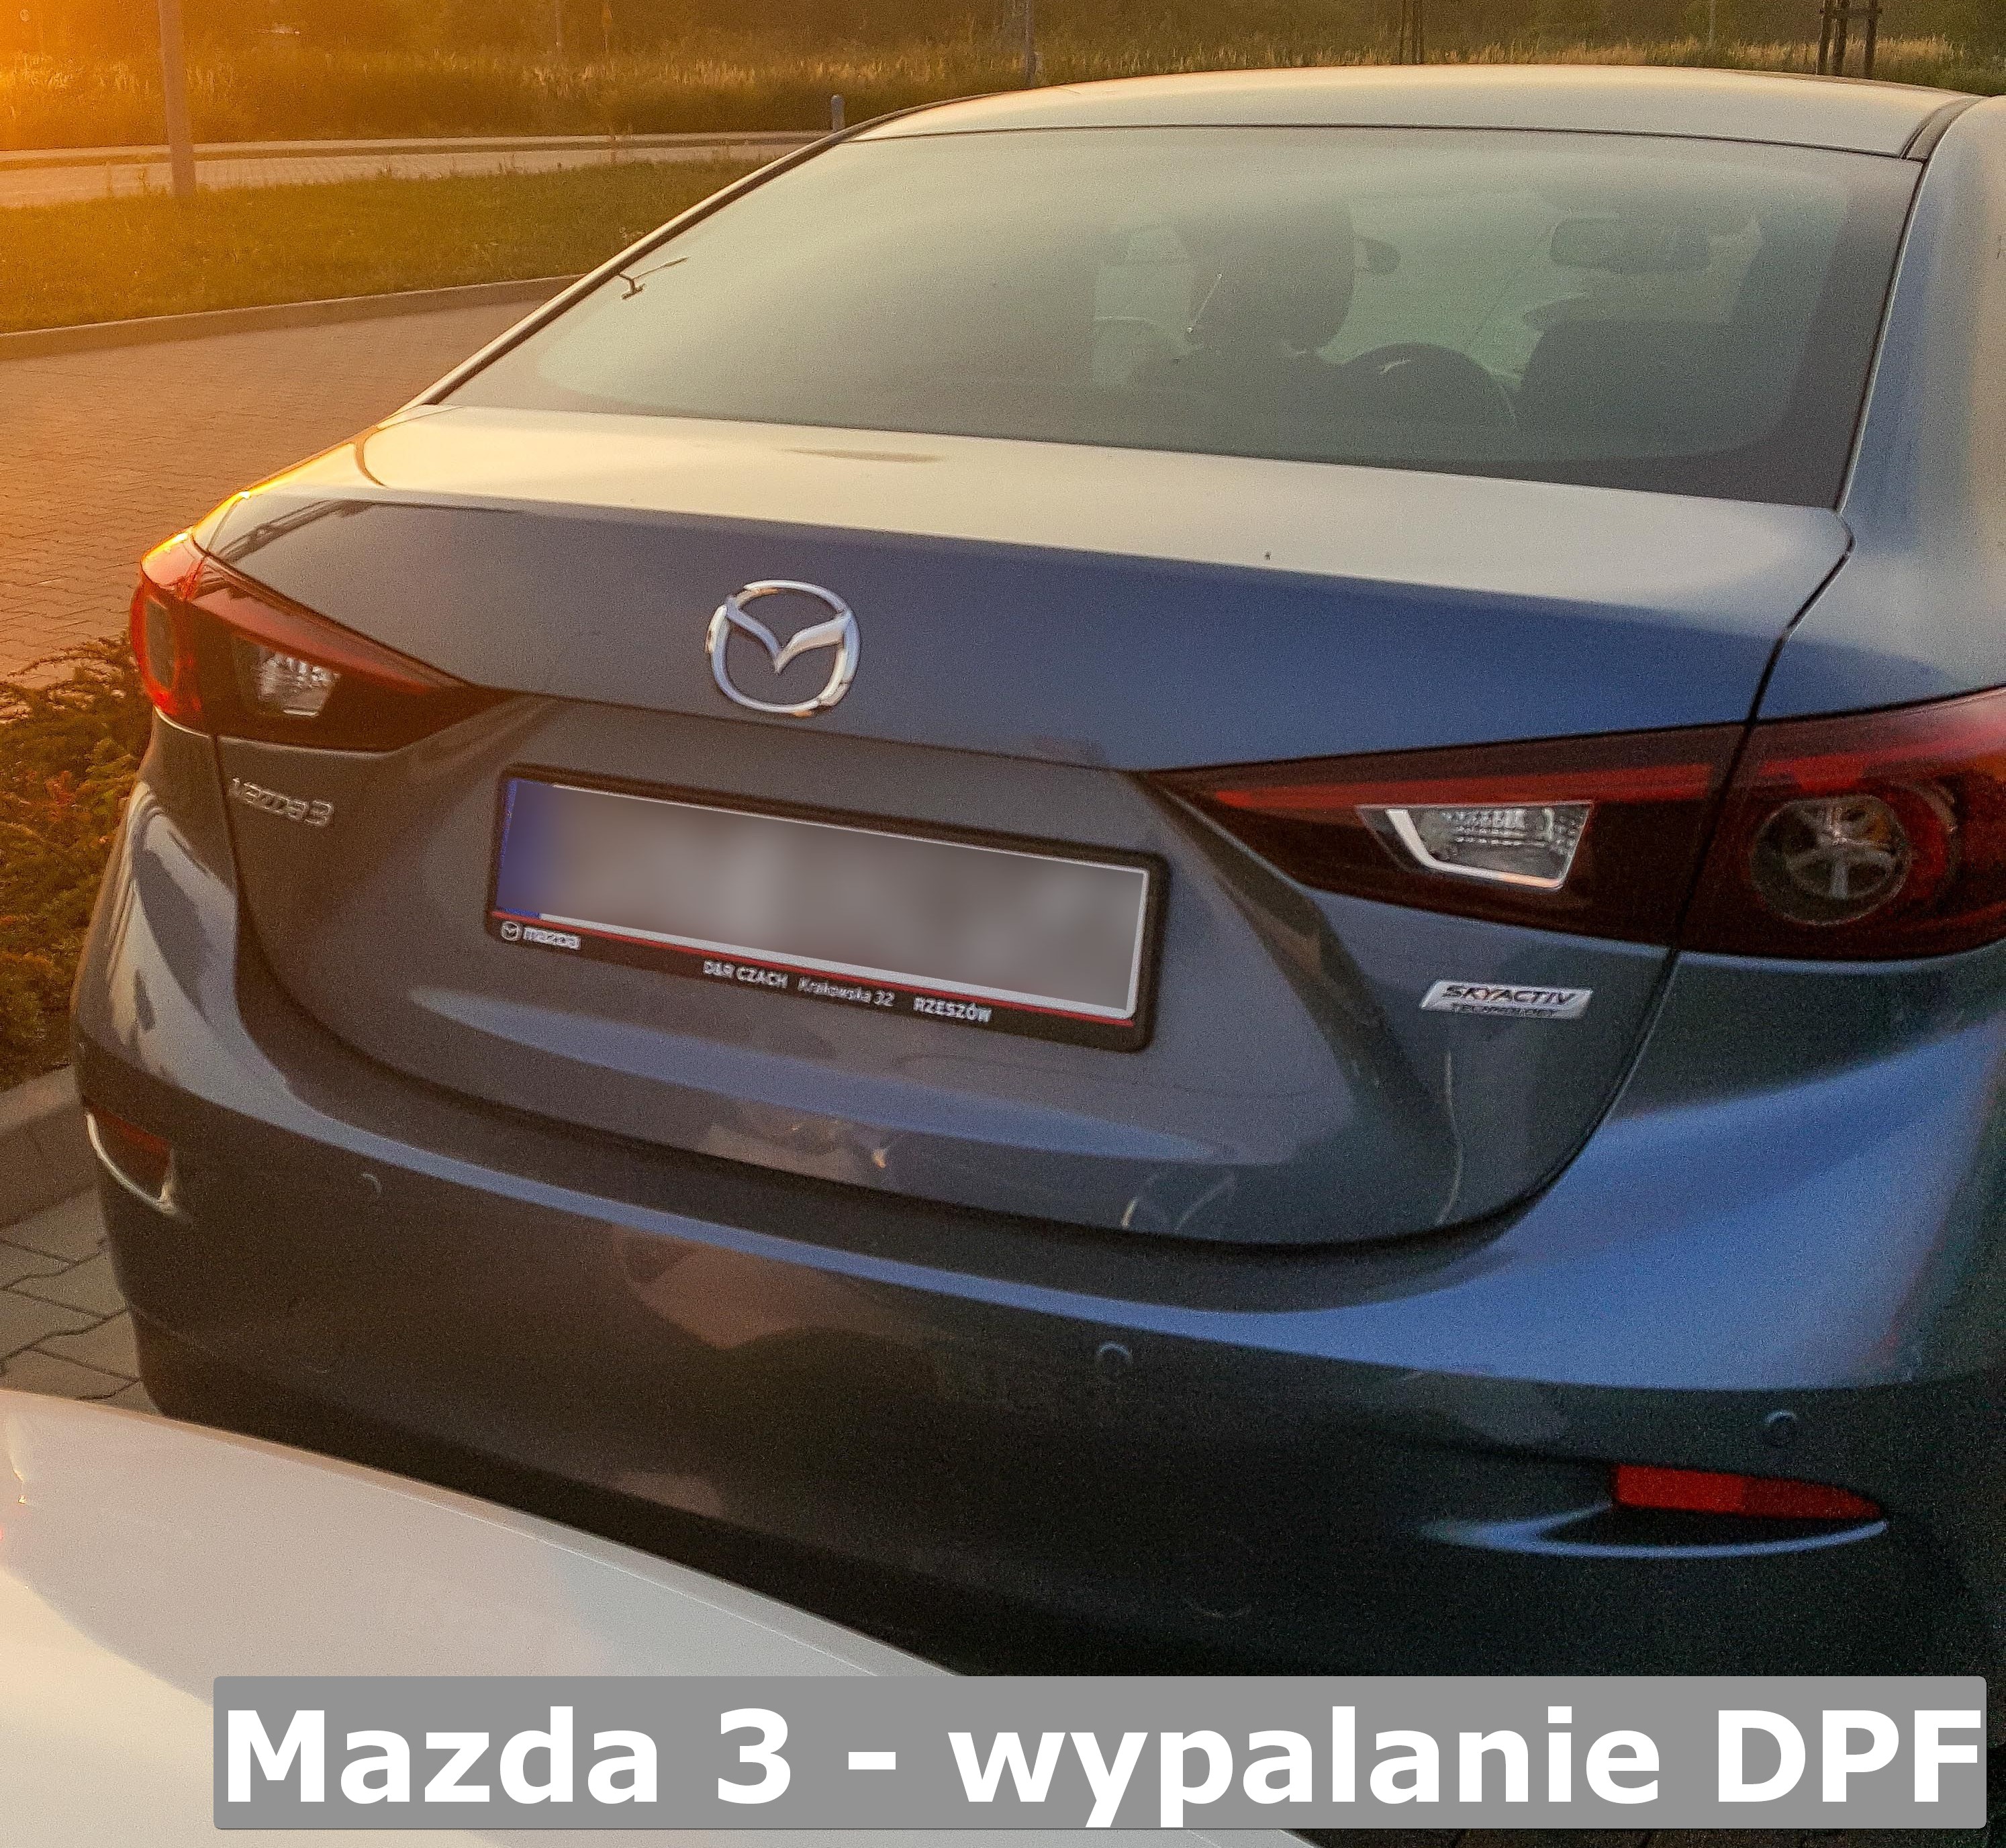 Wypalanie Dpf Mazda – Część 19